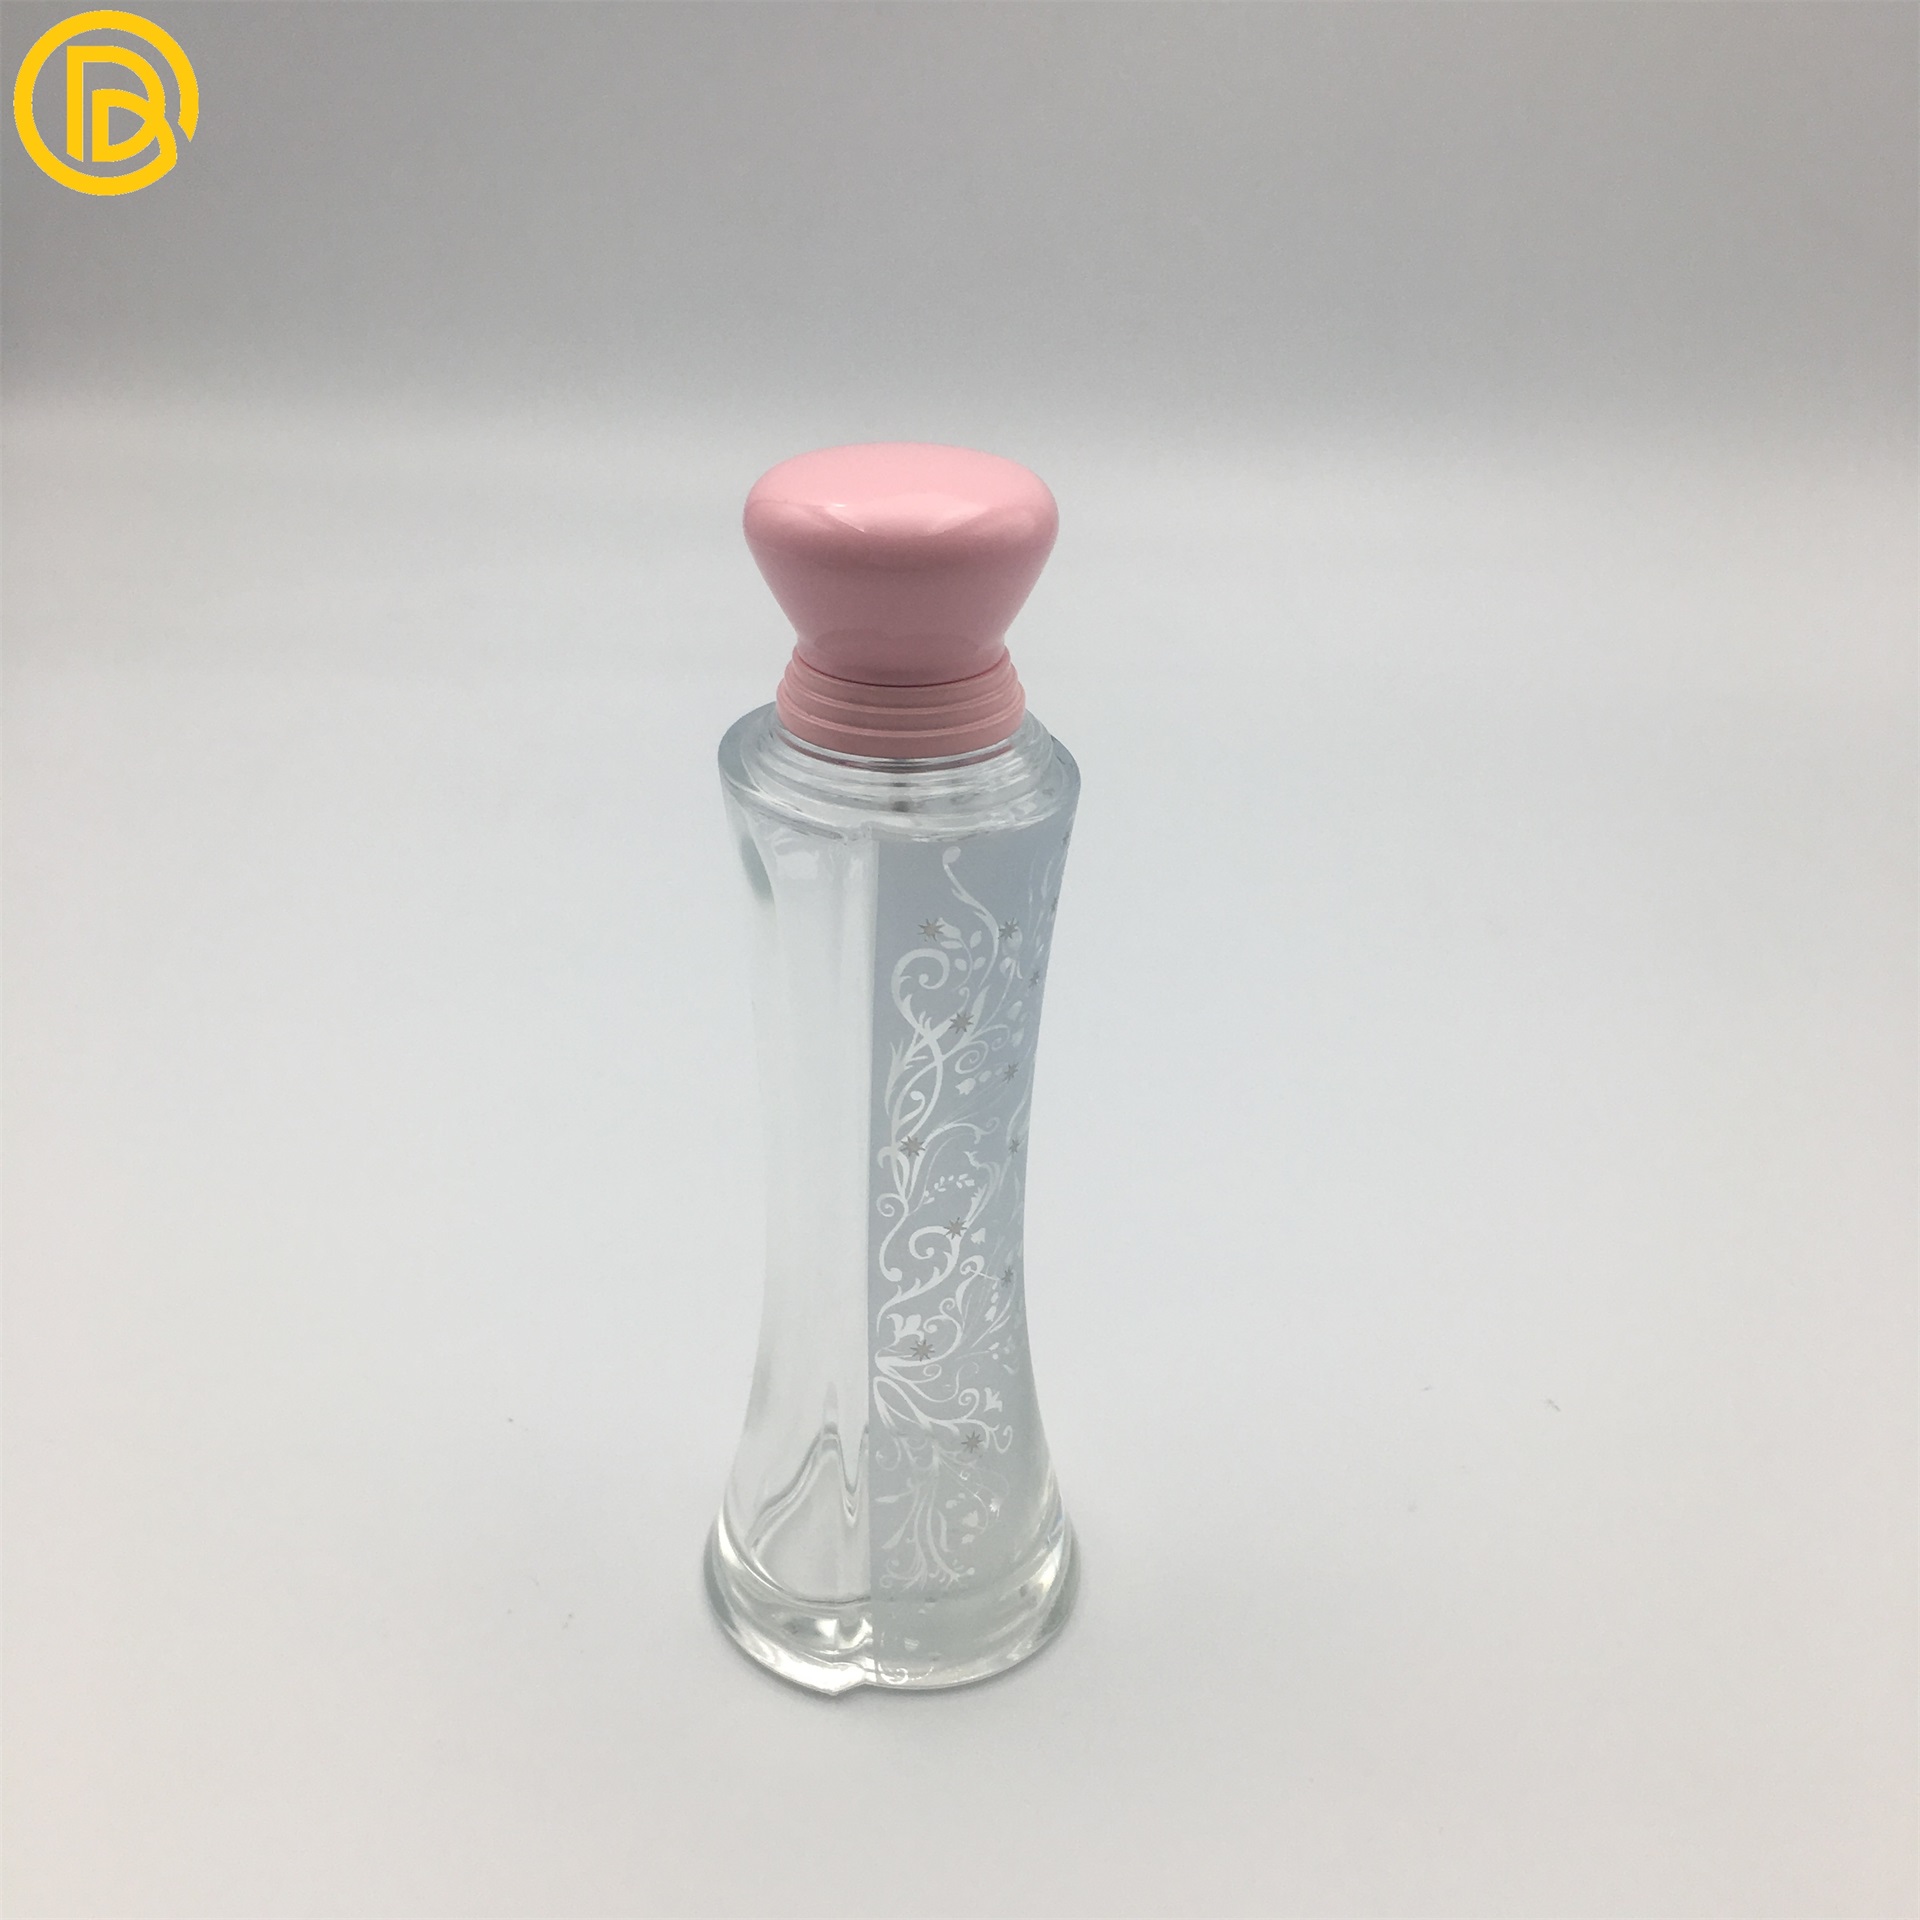 厂家定制精美锌合金香水瓶盖 化妆品包装香水盖 可定制LOGO